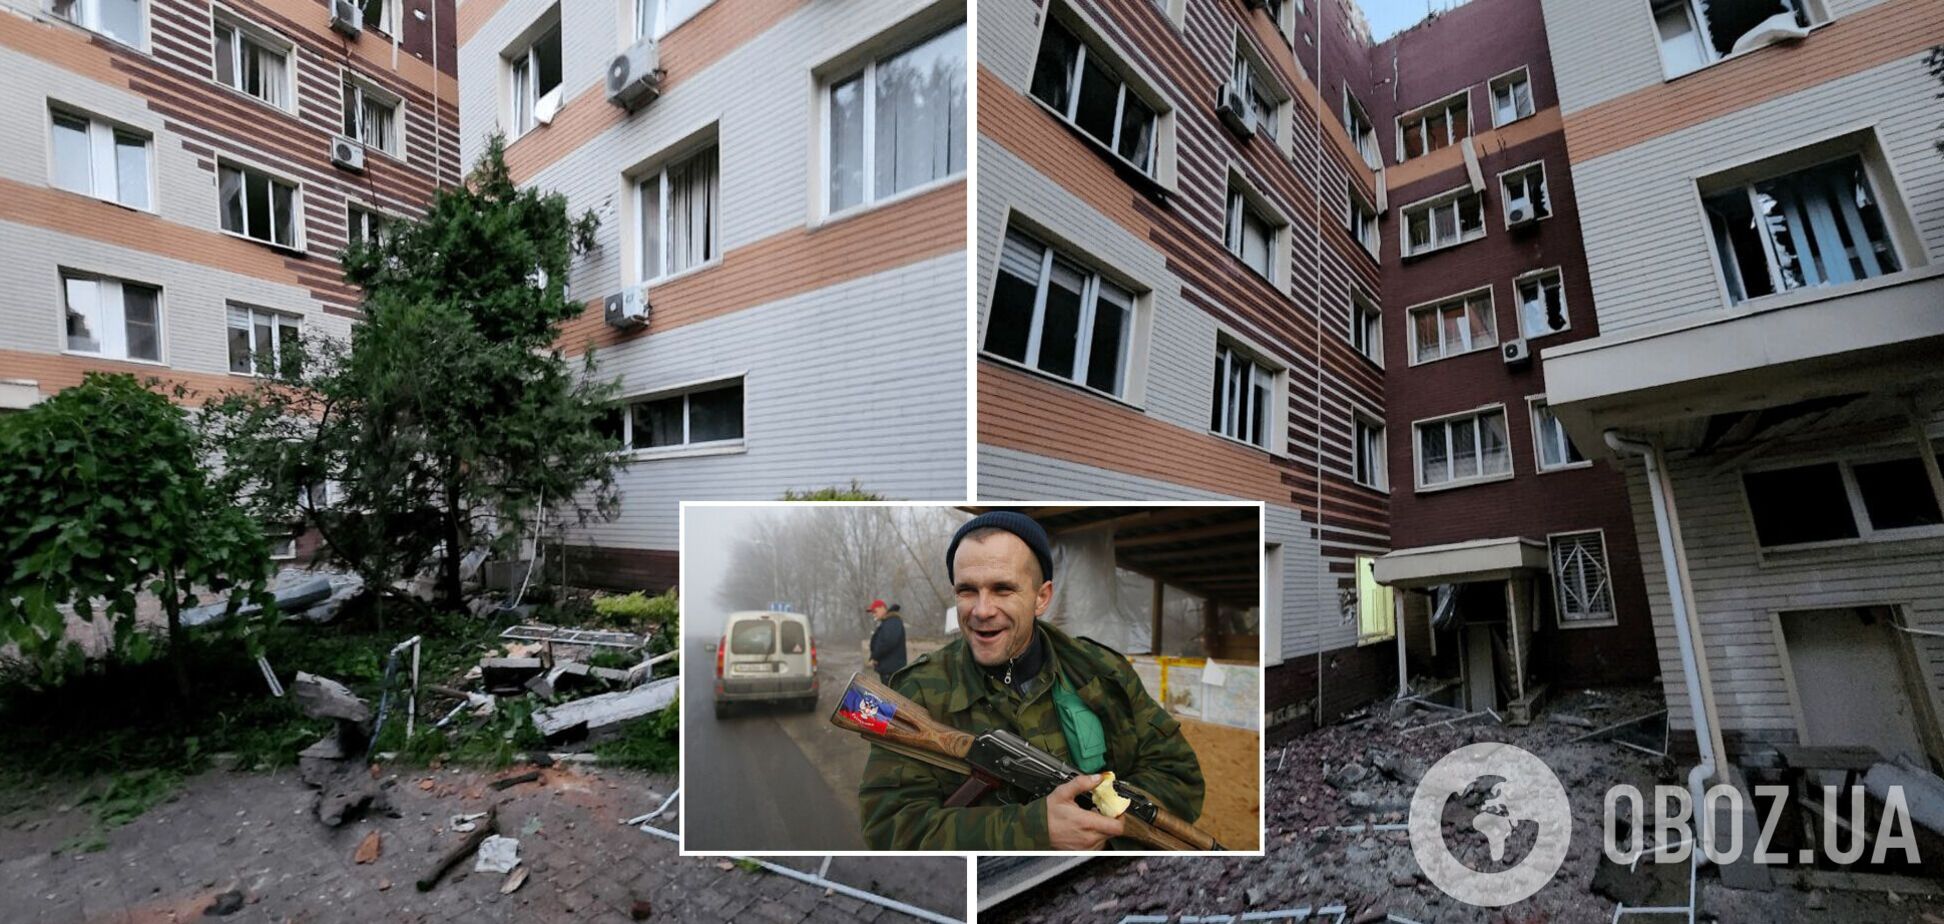 Дончане признают, что по центру Донецка бьют с территории, подконтрольной оккупантам